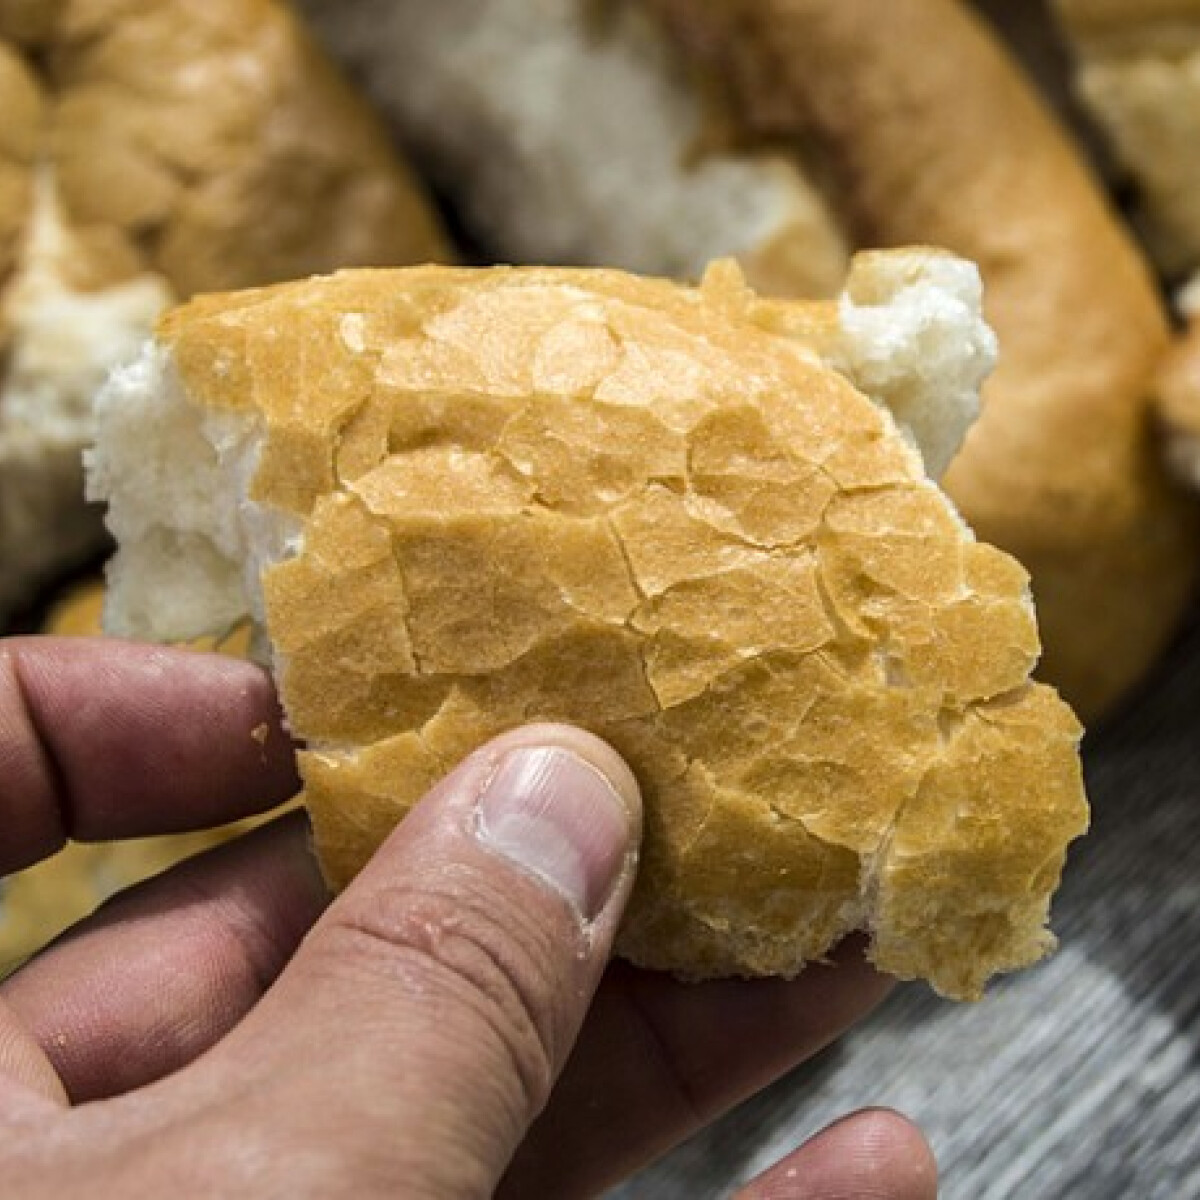 10 tuti tipp, mire használd fel a megmaradt száraz kenyered